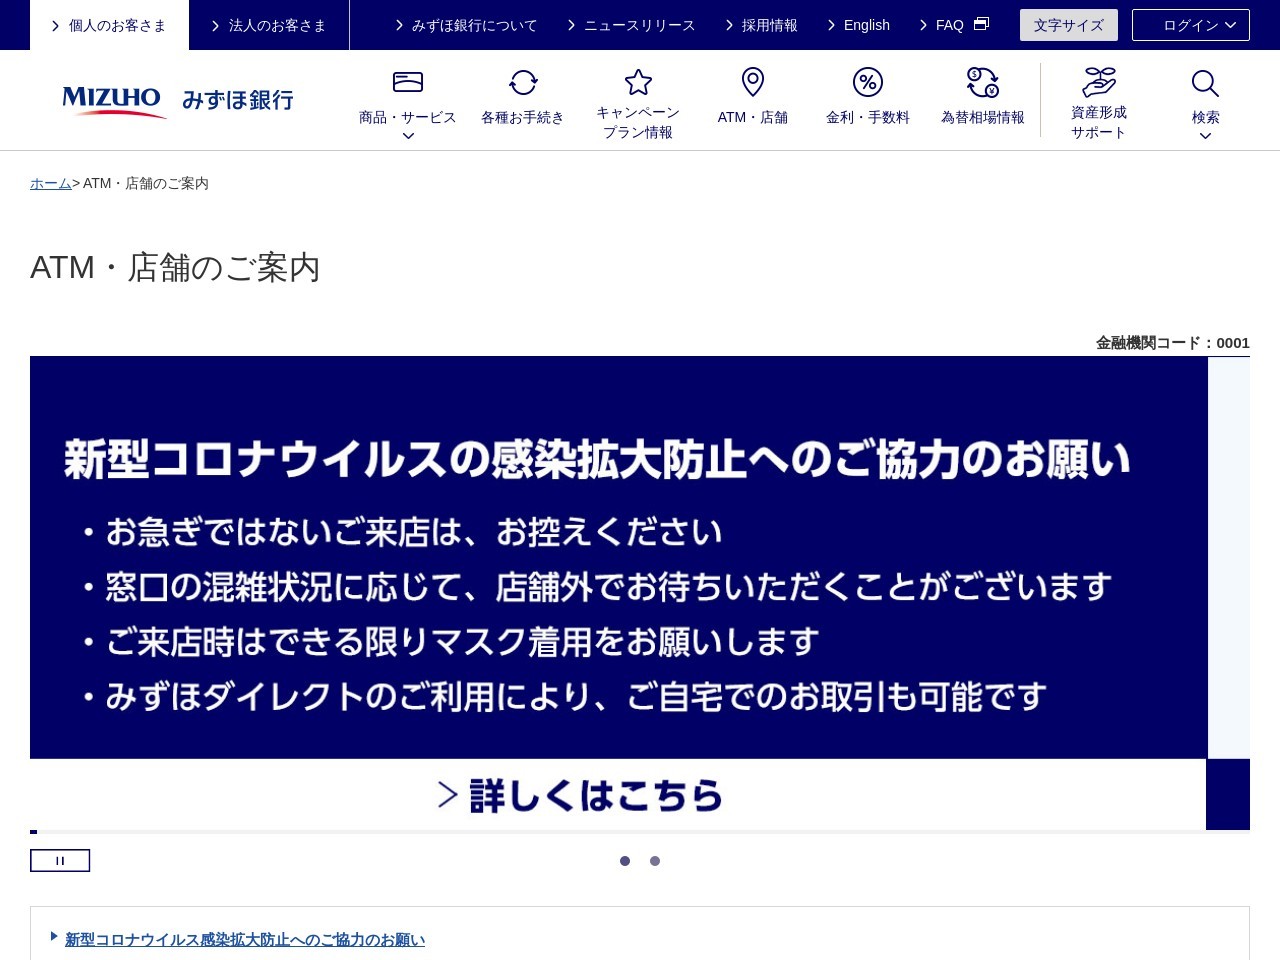 みずほ銀行 岡山支店のクチコミ・評判とホームページ